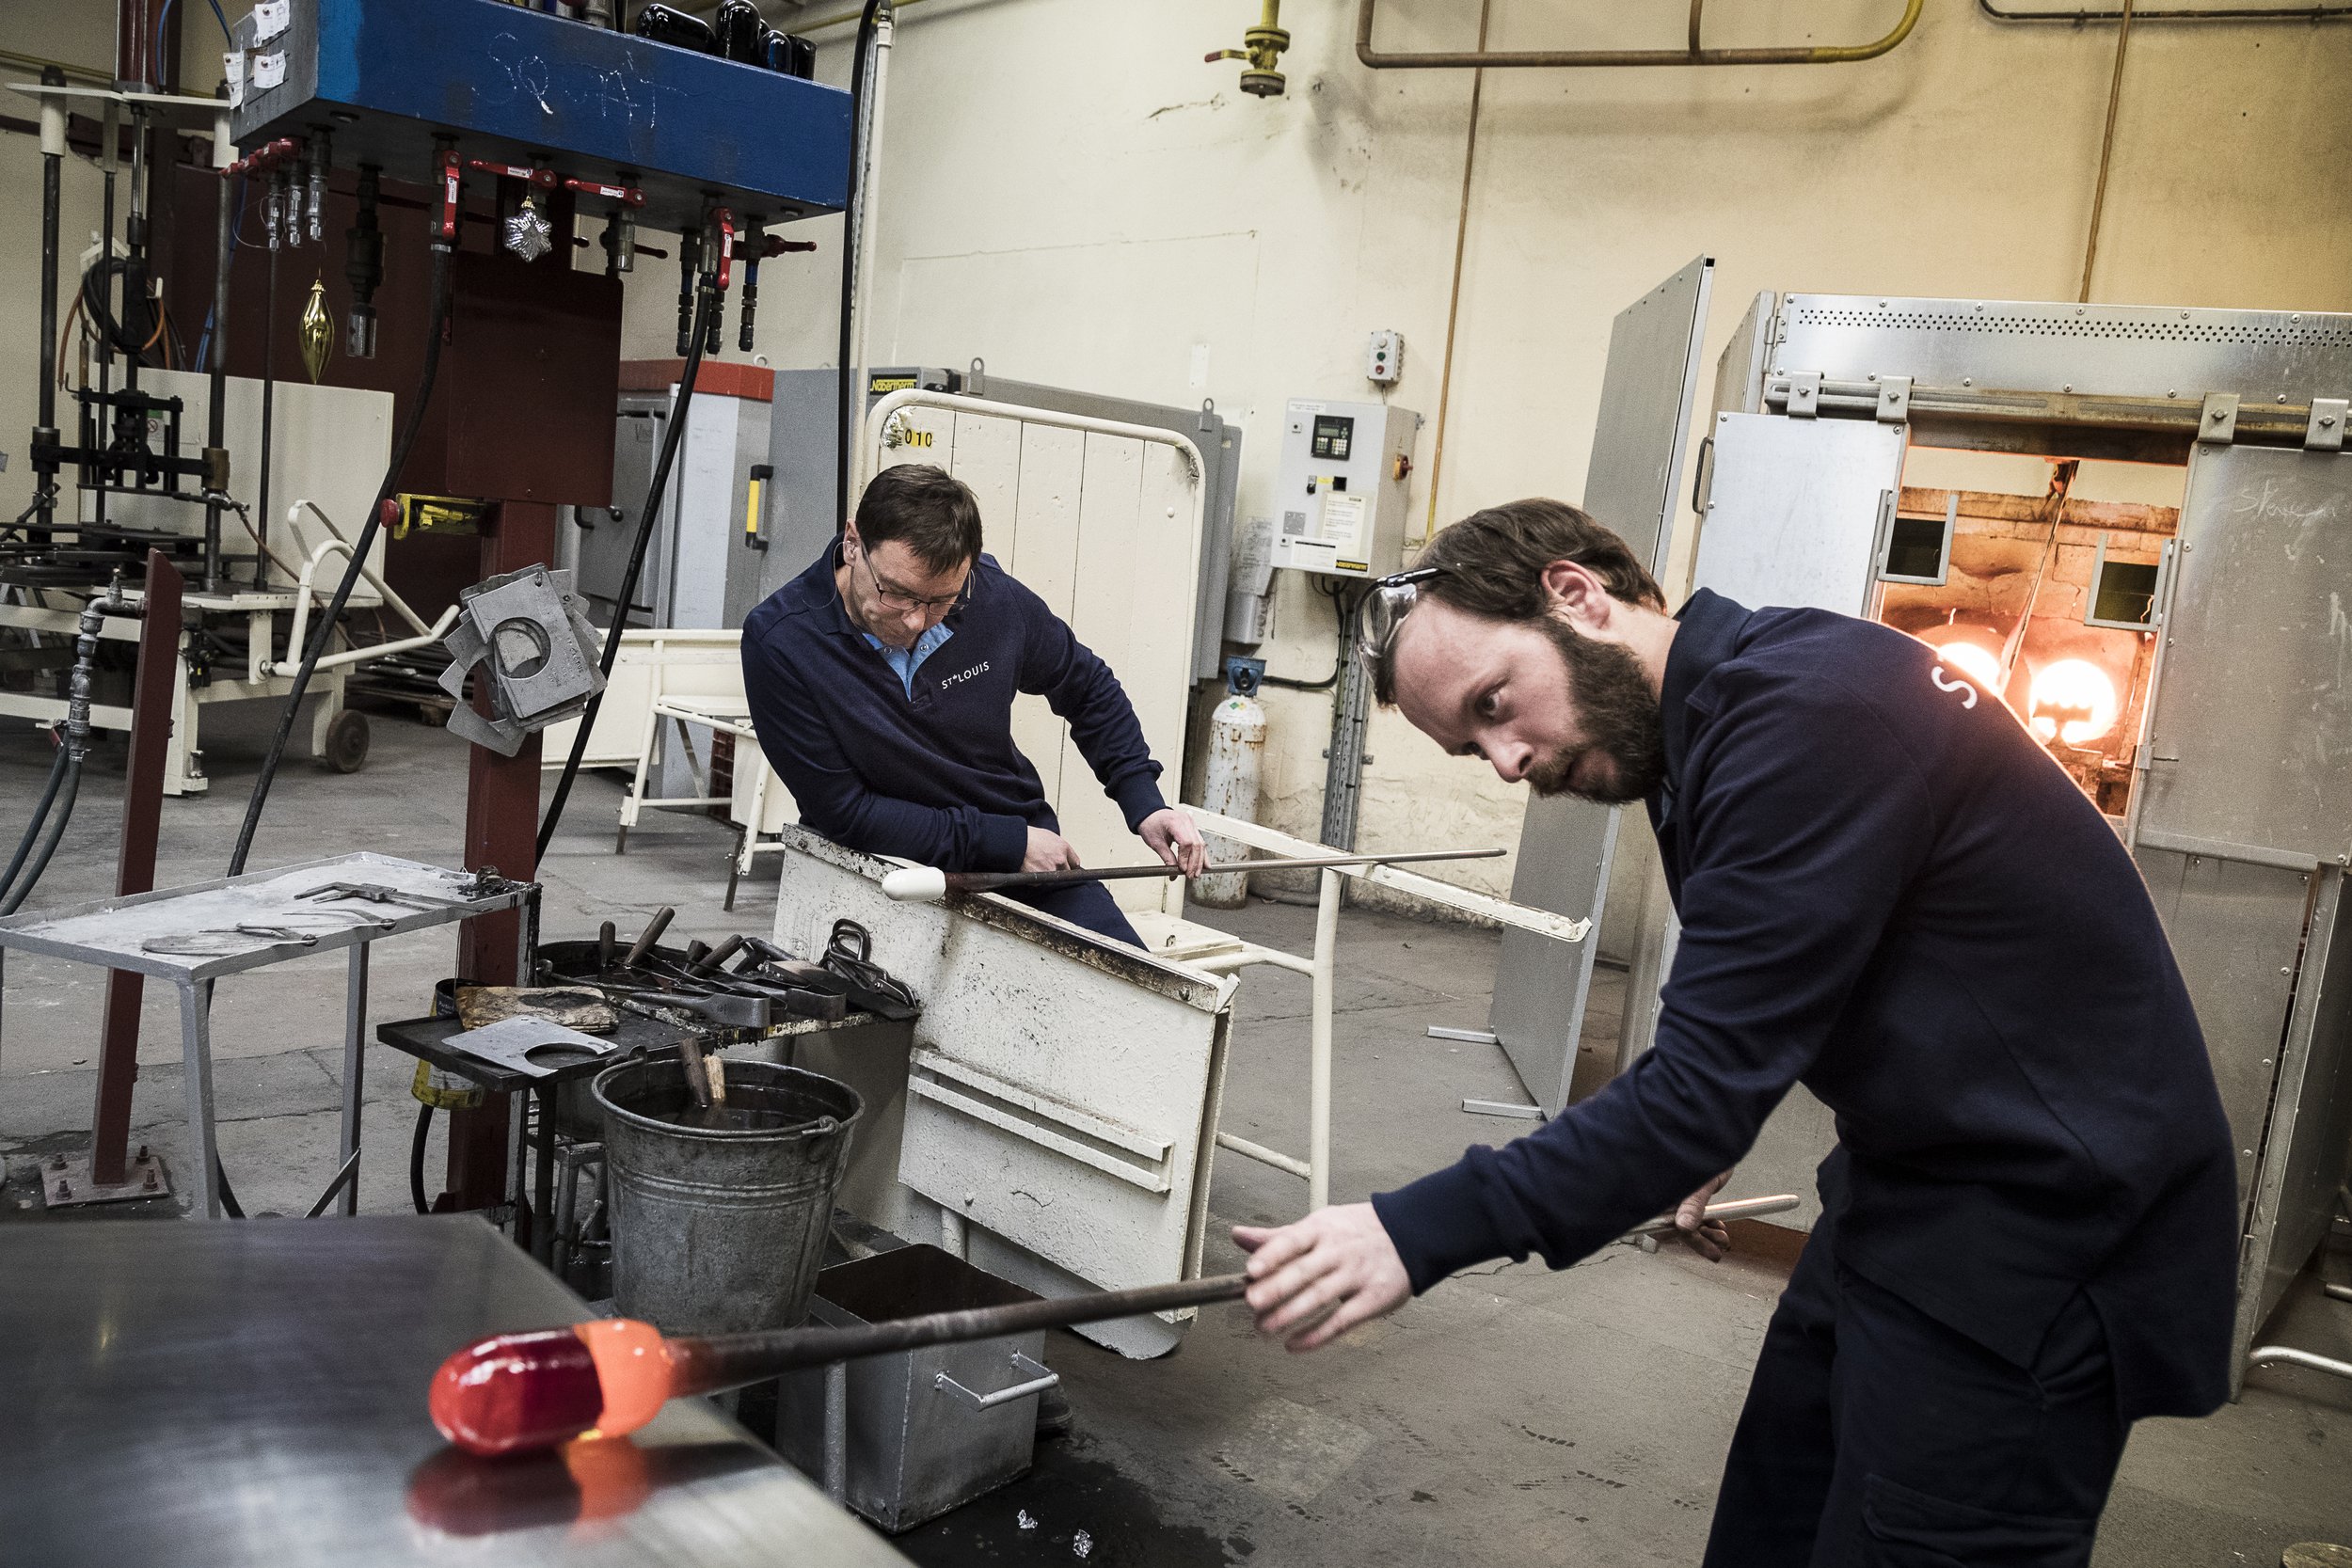  Saint-Louis-lès-Bitche, 5 décembre 2016. Xavier Zimmermann, (à gauche), verrier, au travail avec Steve, à qui il transmet les gestes de la fabrication du presse-papier en cristal,  dans les ateliers de la cristallerie Saint-Louis. 